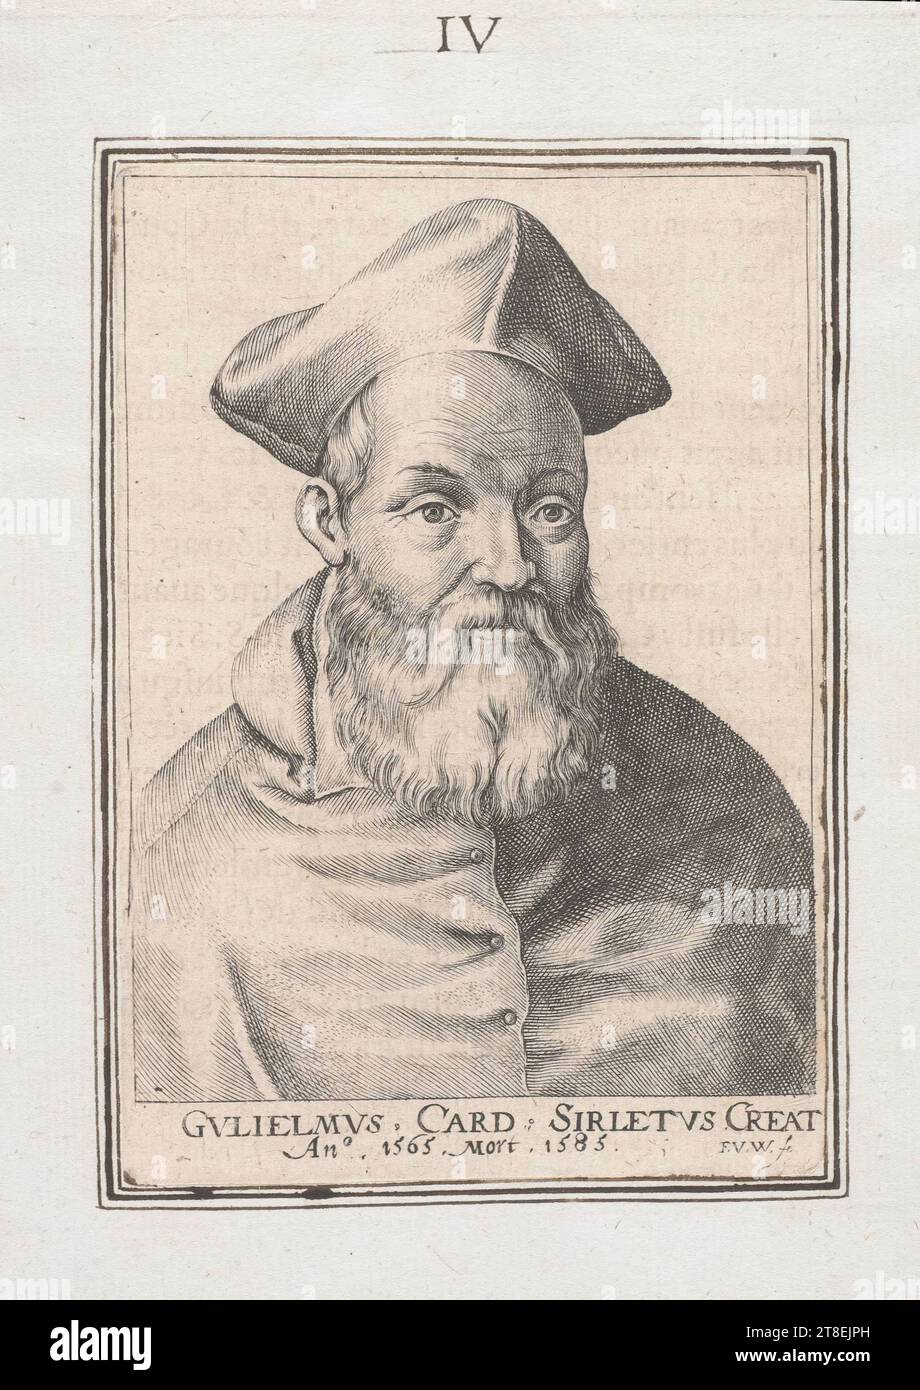 Eingefügtes Porträt und Rahmen um Porträt, das später in Tinte neu gezeichnet wurde. [IV (Tinte)]. GVLIELMVS-KARTE. SIRLETVS CREAT an°, 1586, Tod 1585. F.V.W. sc Stockfoto